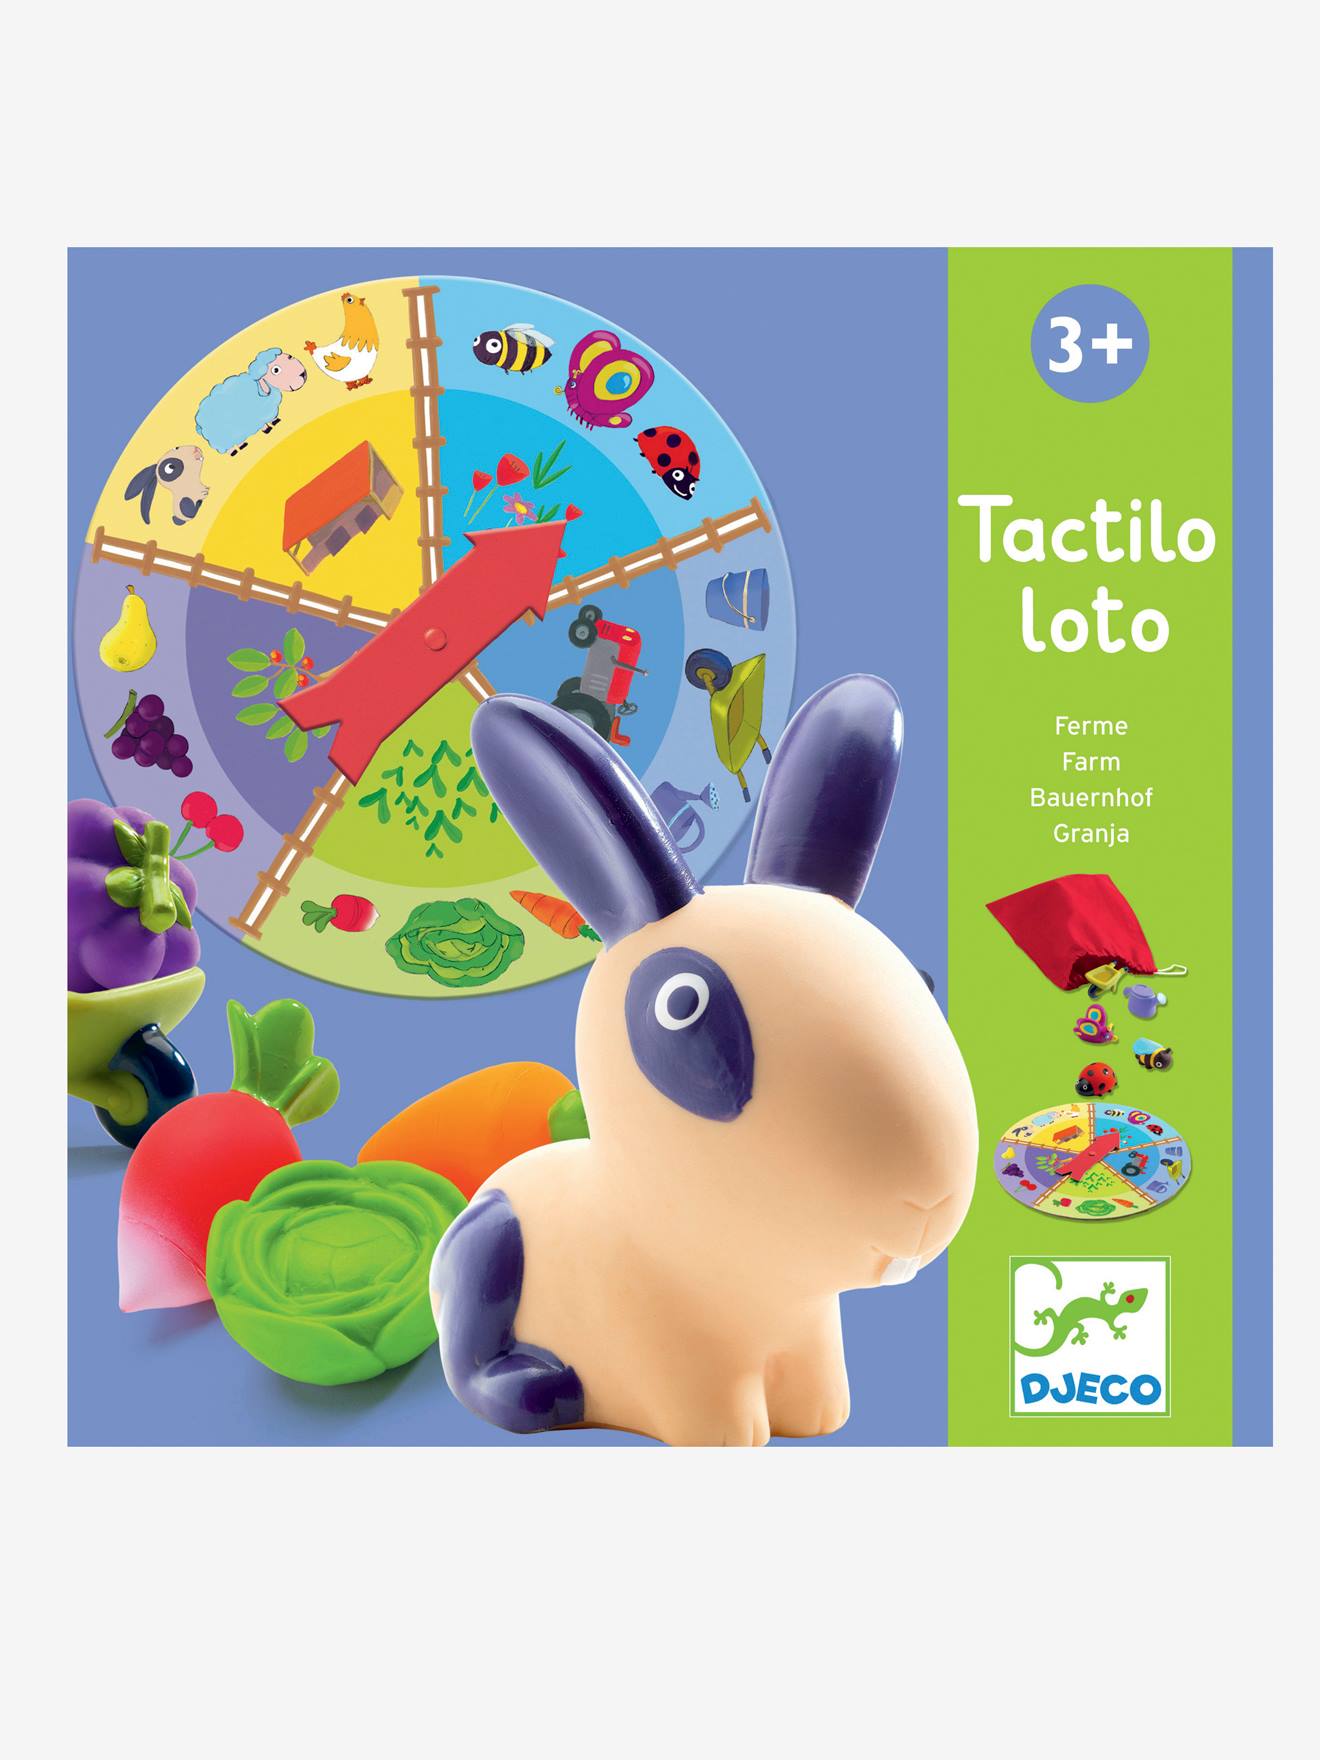 Tactile Farm Lotto, by DJECO multi